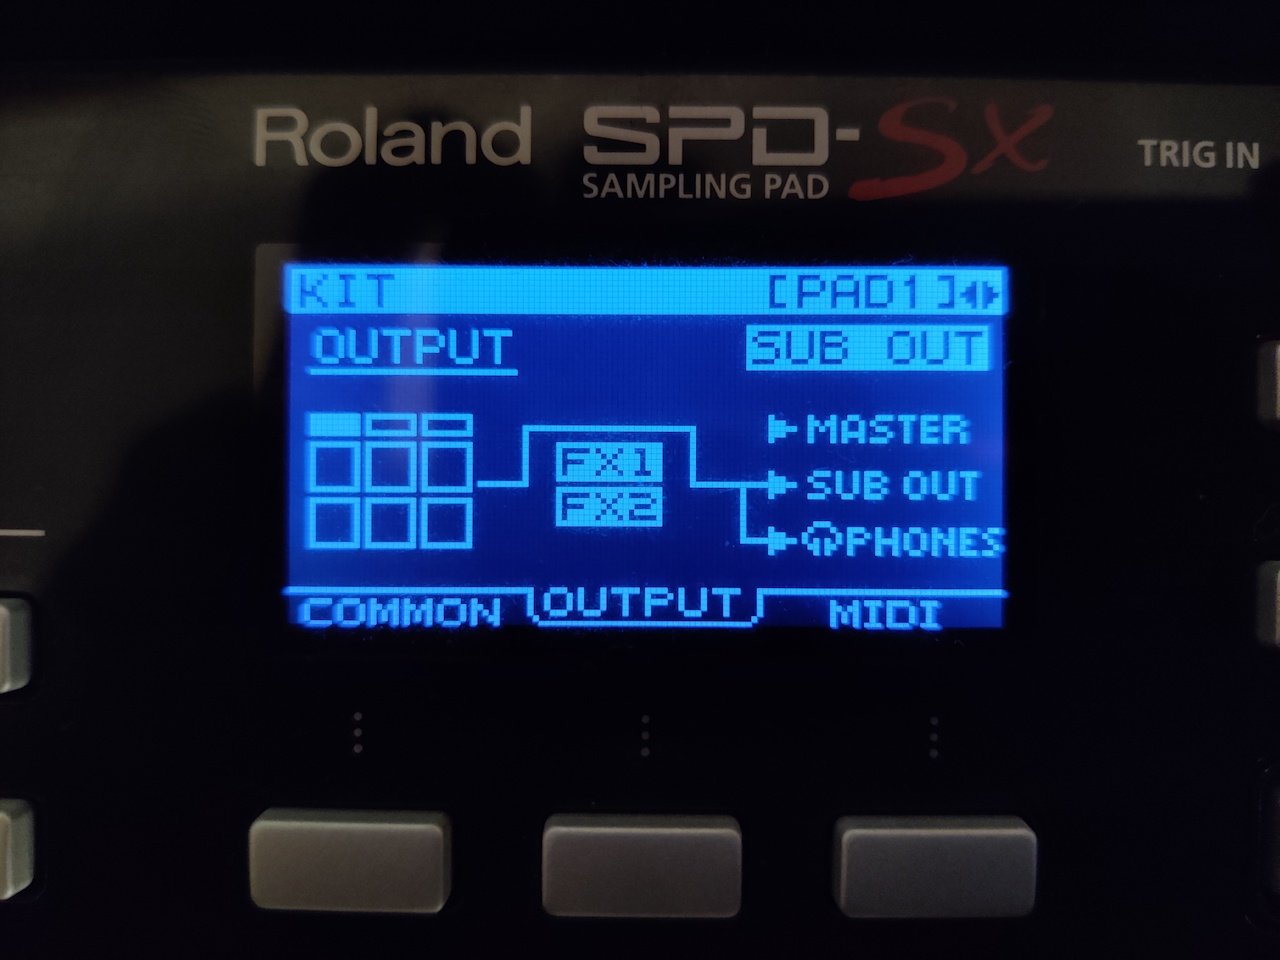 SPD-SX Route Output